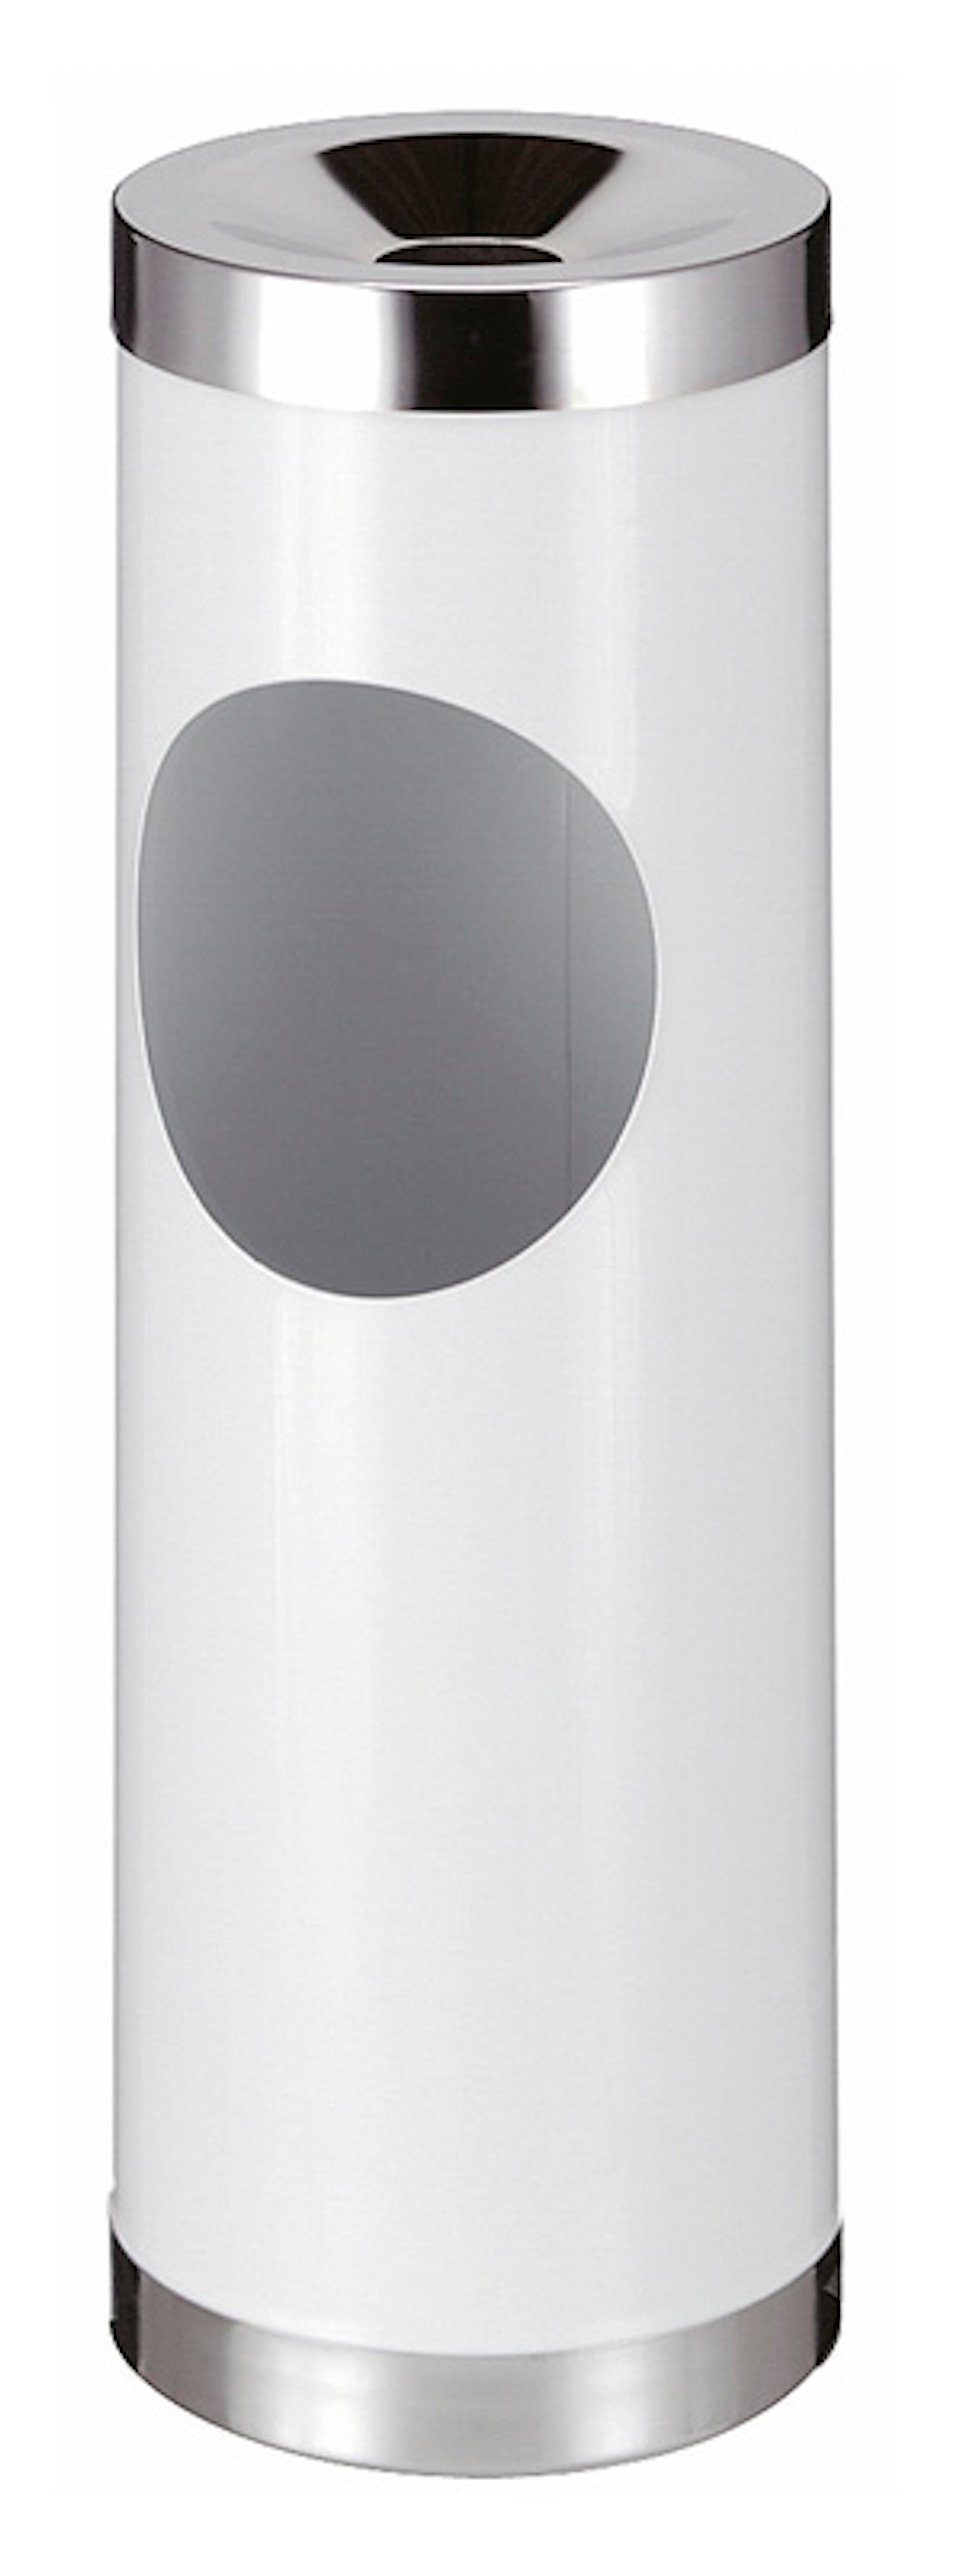 Metall Weiß Einwurfsöffnung, 30L, ovaler Aschenbecher PROREGAL® Grau Kombiascher mit Runder